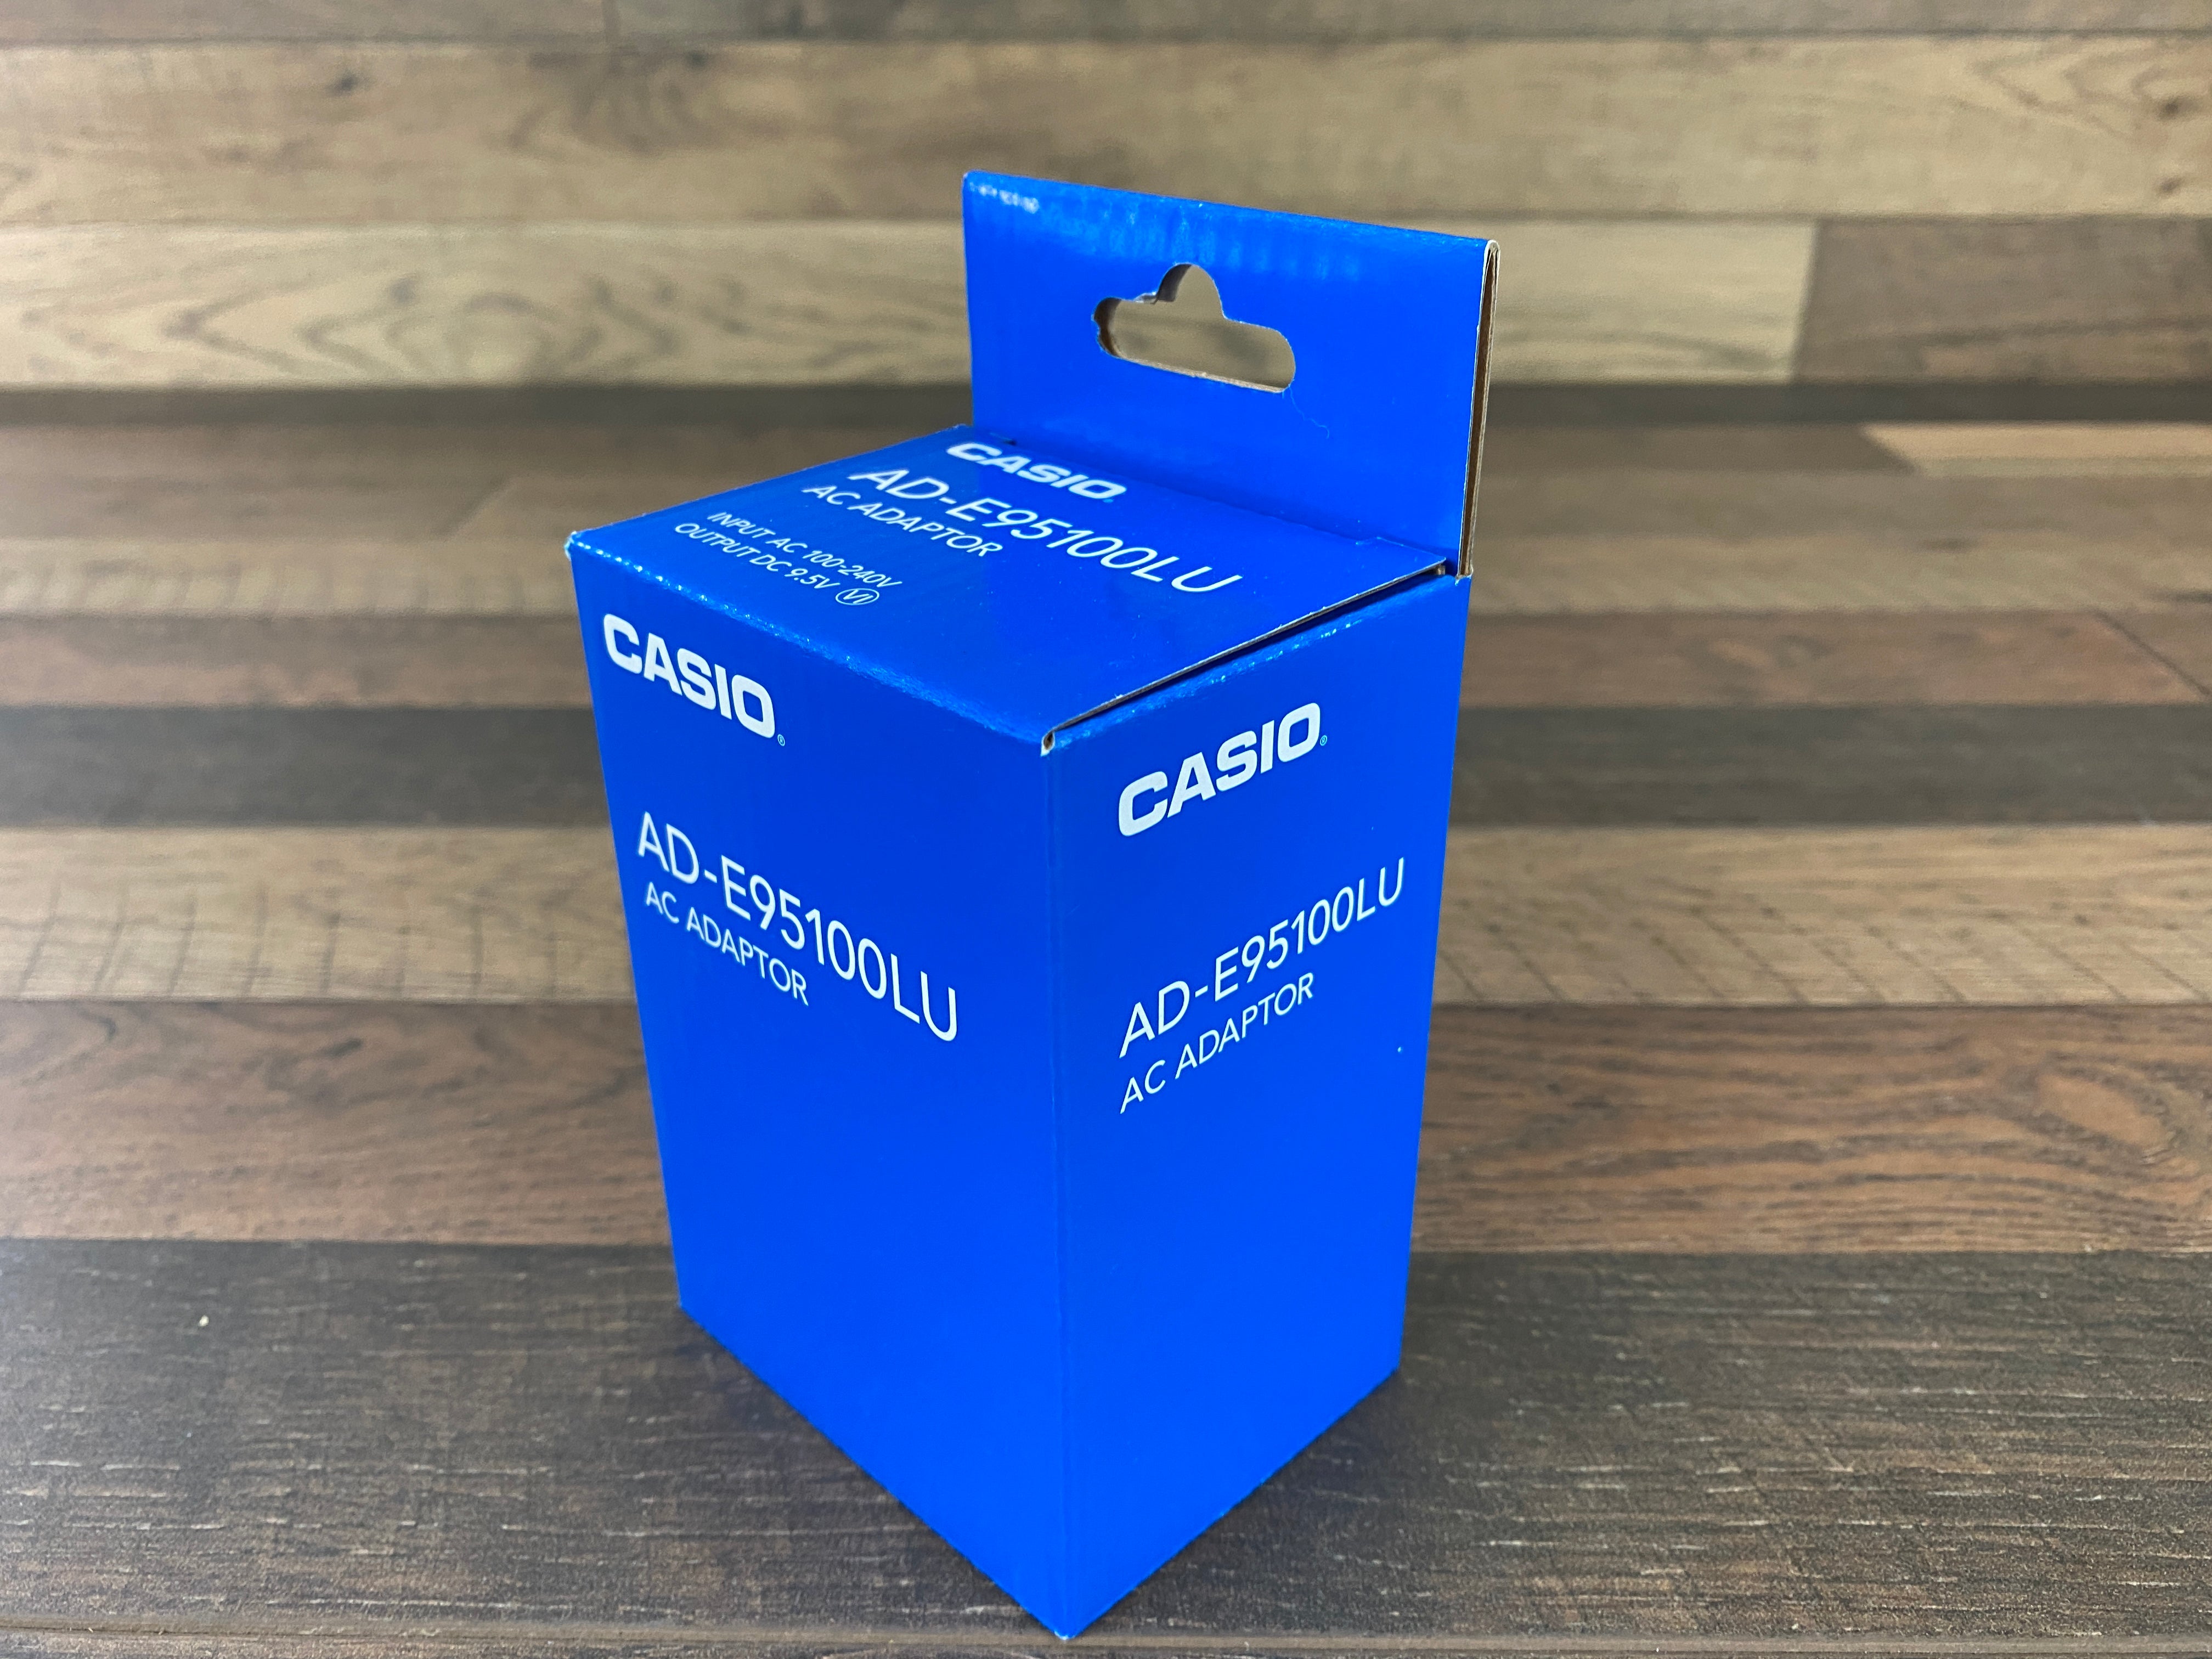 Casio AD-E95100LU AC Adapter Input AC 100-240V / Output DC 9.5V